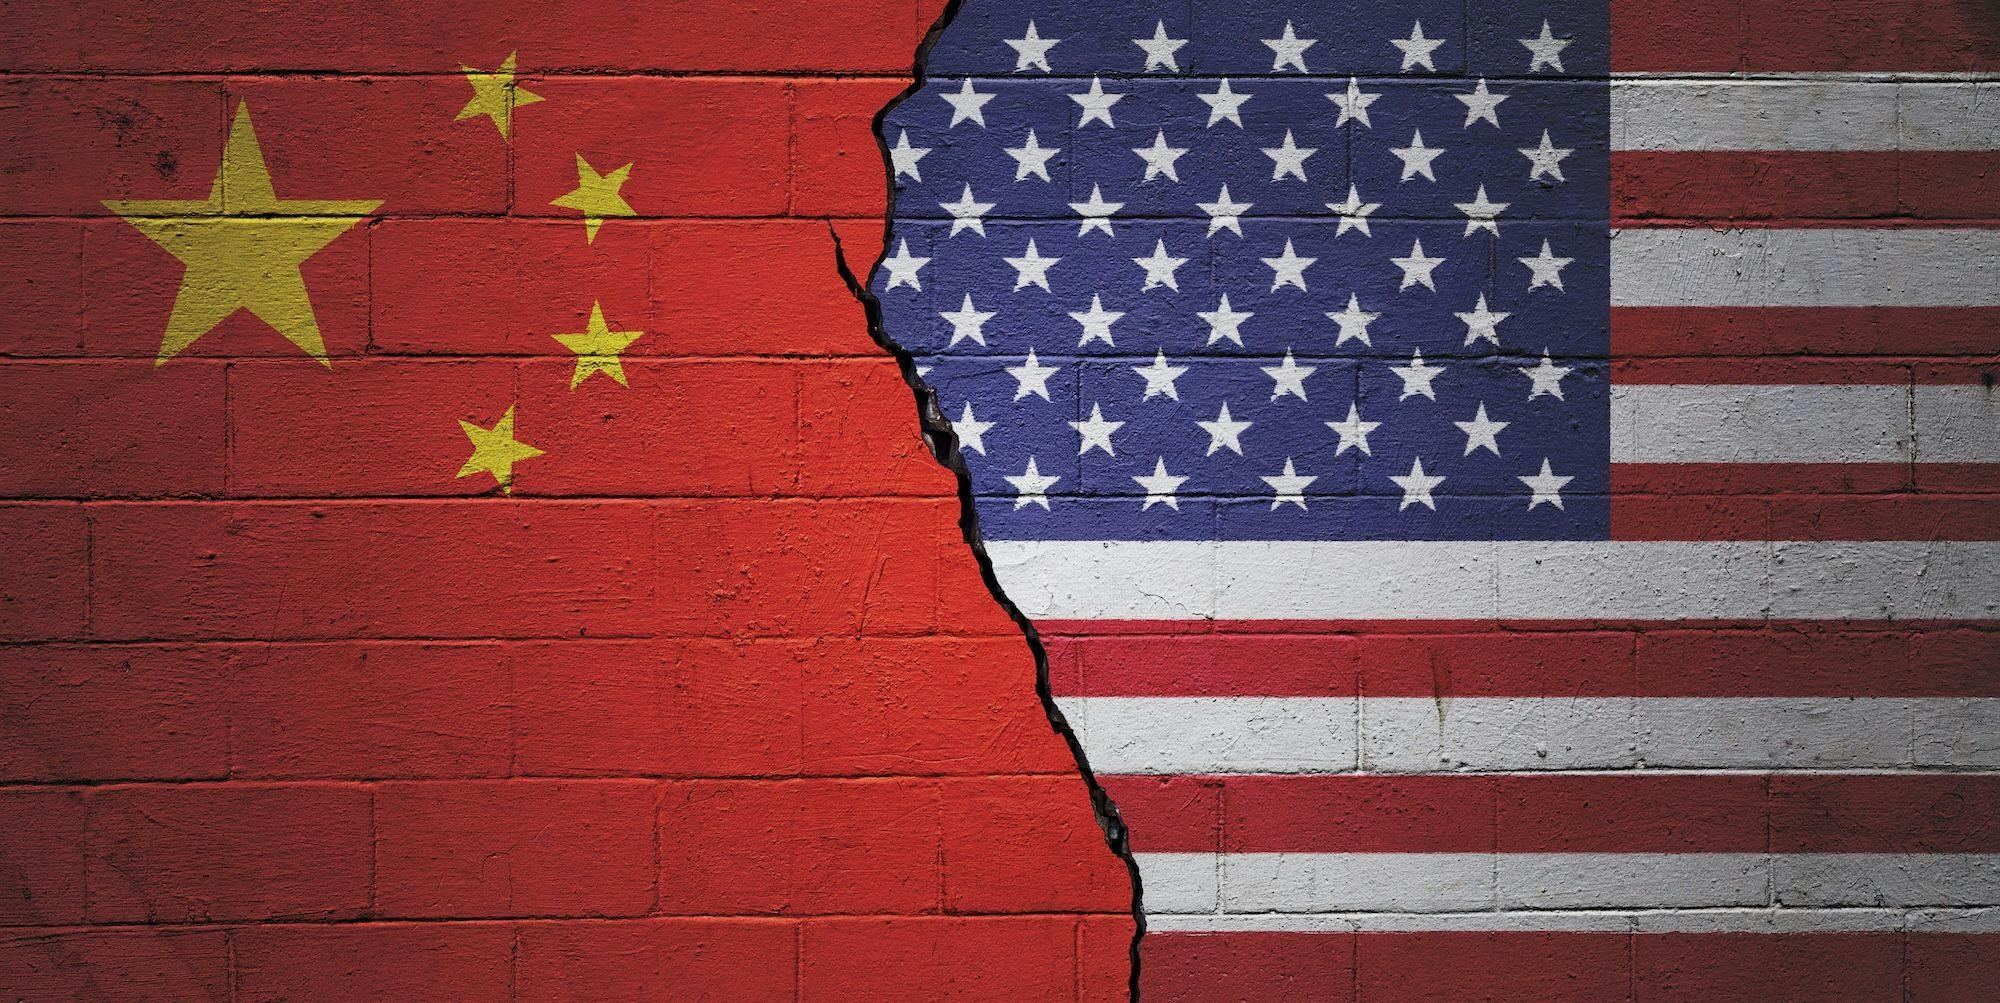 Politik China, China USA: Rissige Backsteinmauer, links mit einer chinesischen und rechts mit einer amerikanischen Flagge bemalt